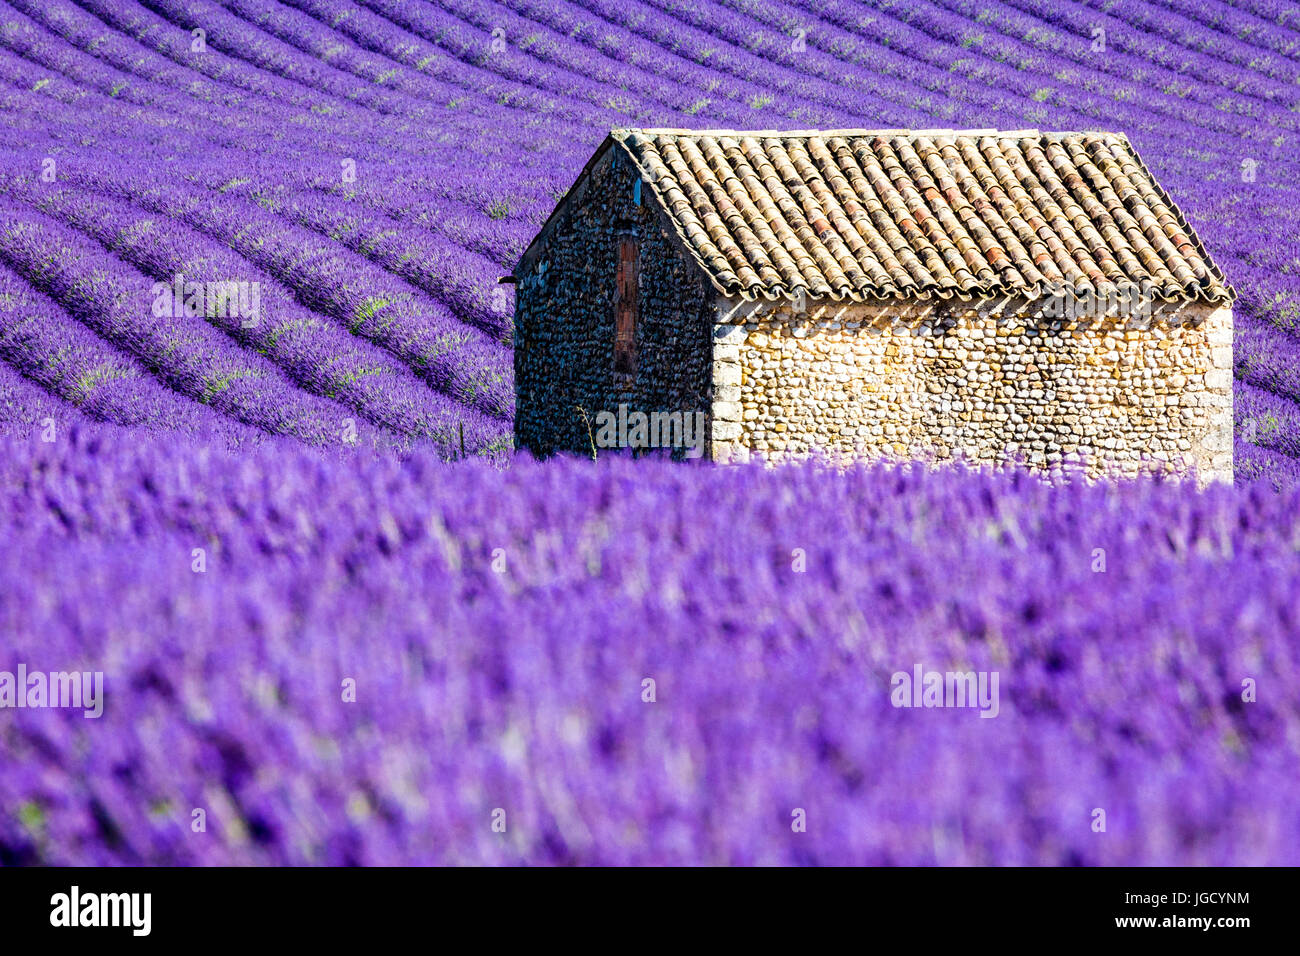 Plateau de Valensole, Provence, France. Champs de lavande en fleurs Banque D'Images